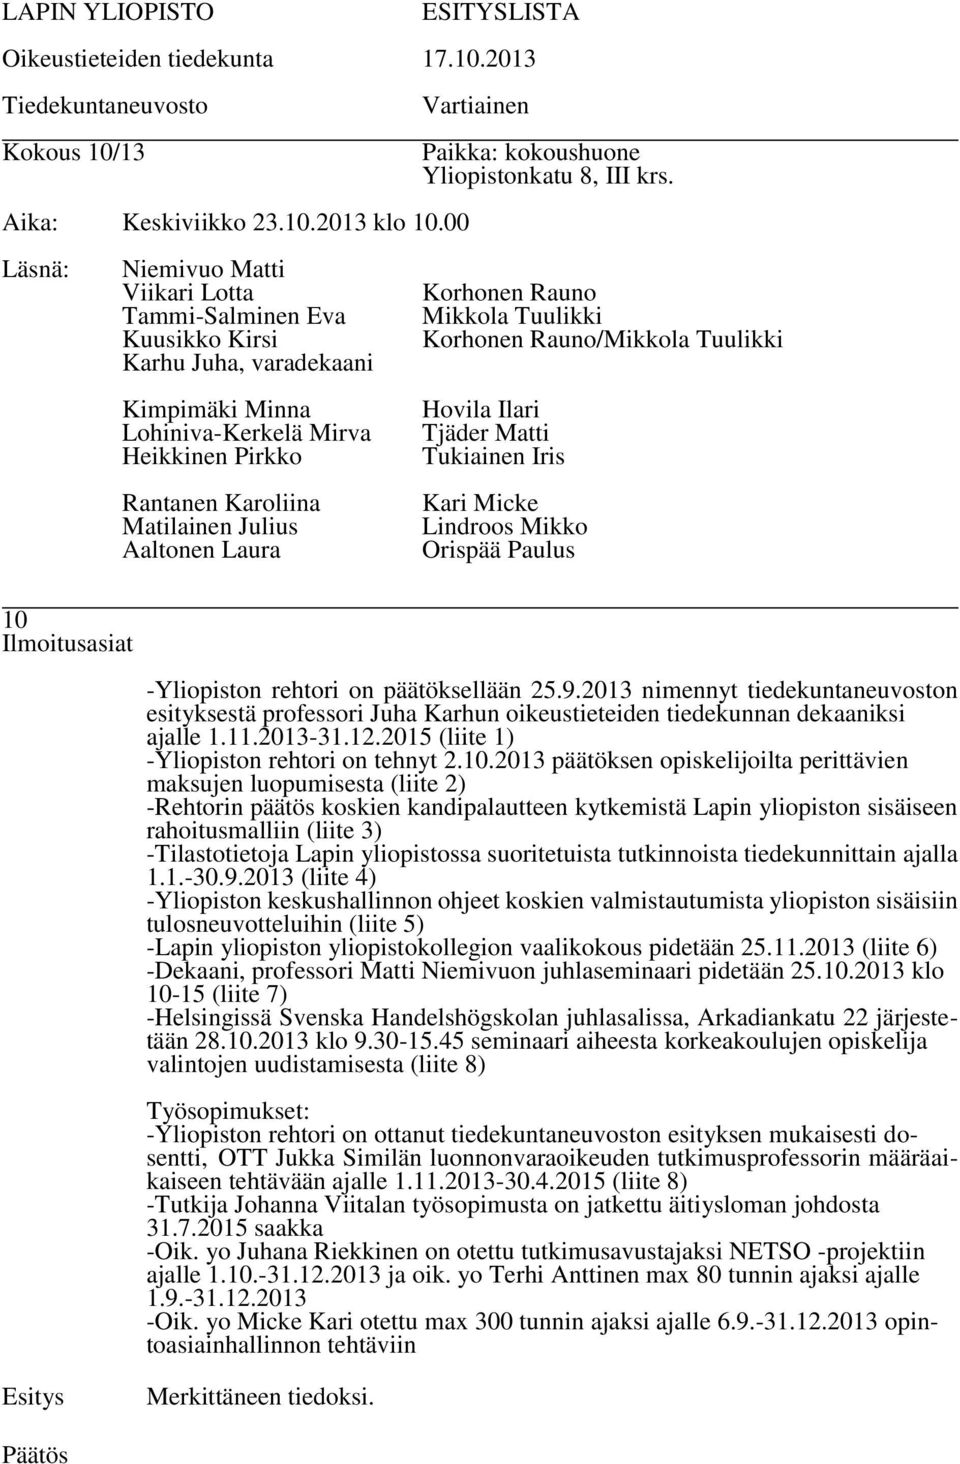 2013 päätöksen opiskelijoilta perittävien maksujen luopumisesta (liite 2) -Rehtorin päätös koskien kandipalautteen kytkemistä Lapin yliopiston sisäiseen rahoitusmalliin (liite 3) -Tilastotietoja